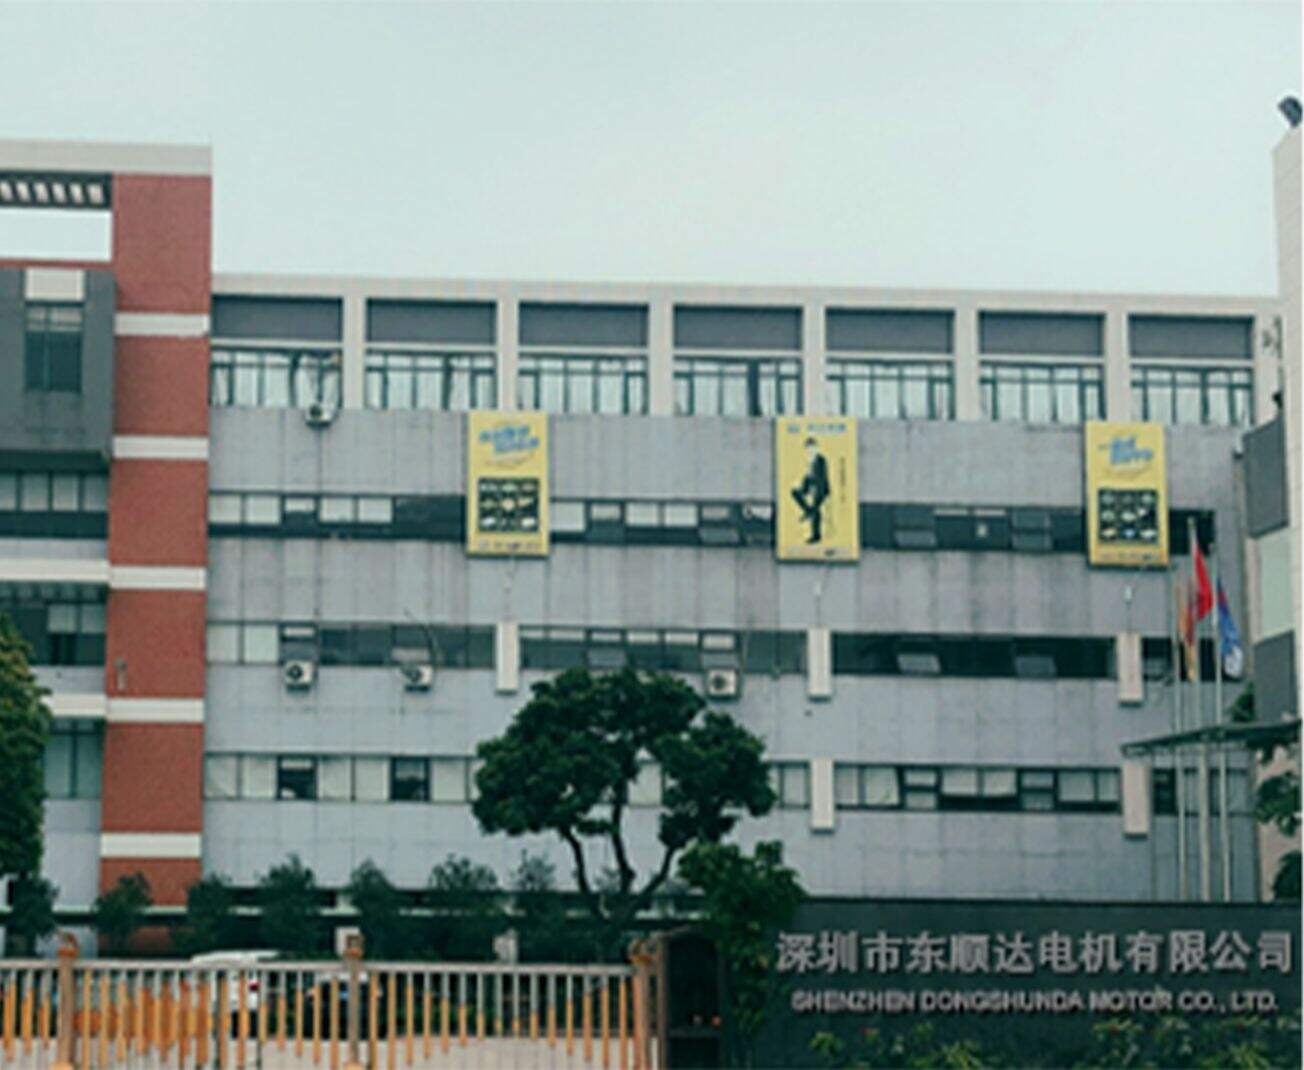 Tá Shenzhen Dongshunda Motor Co.